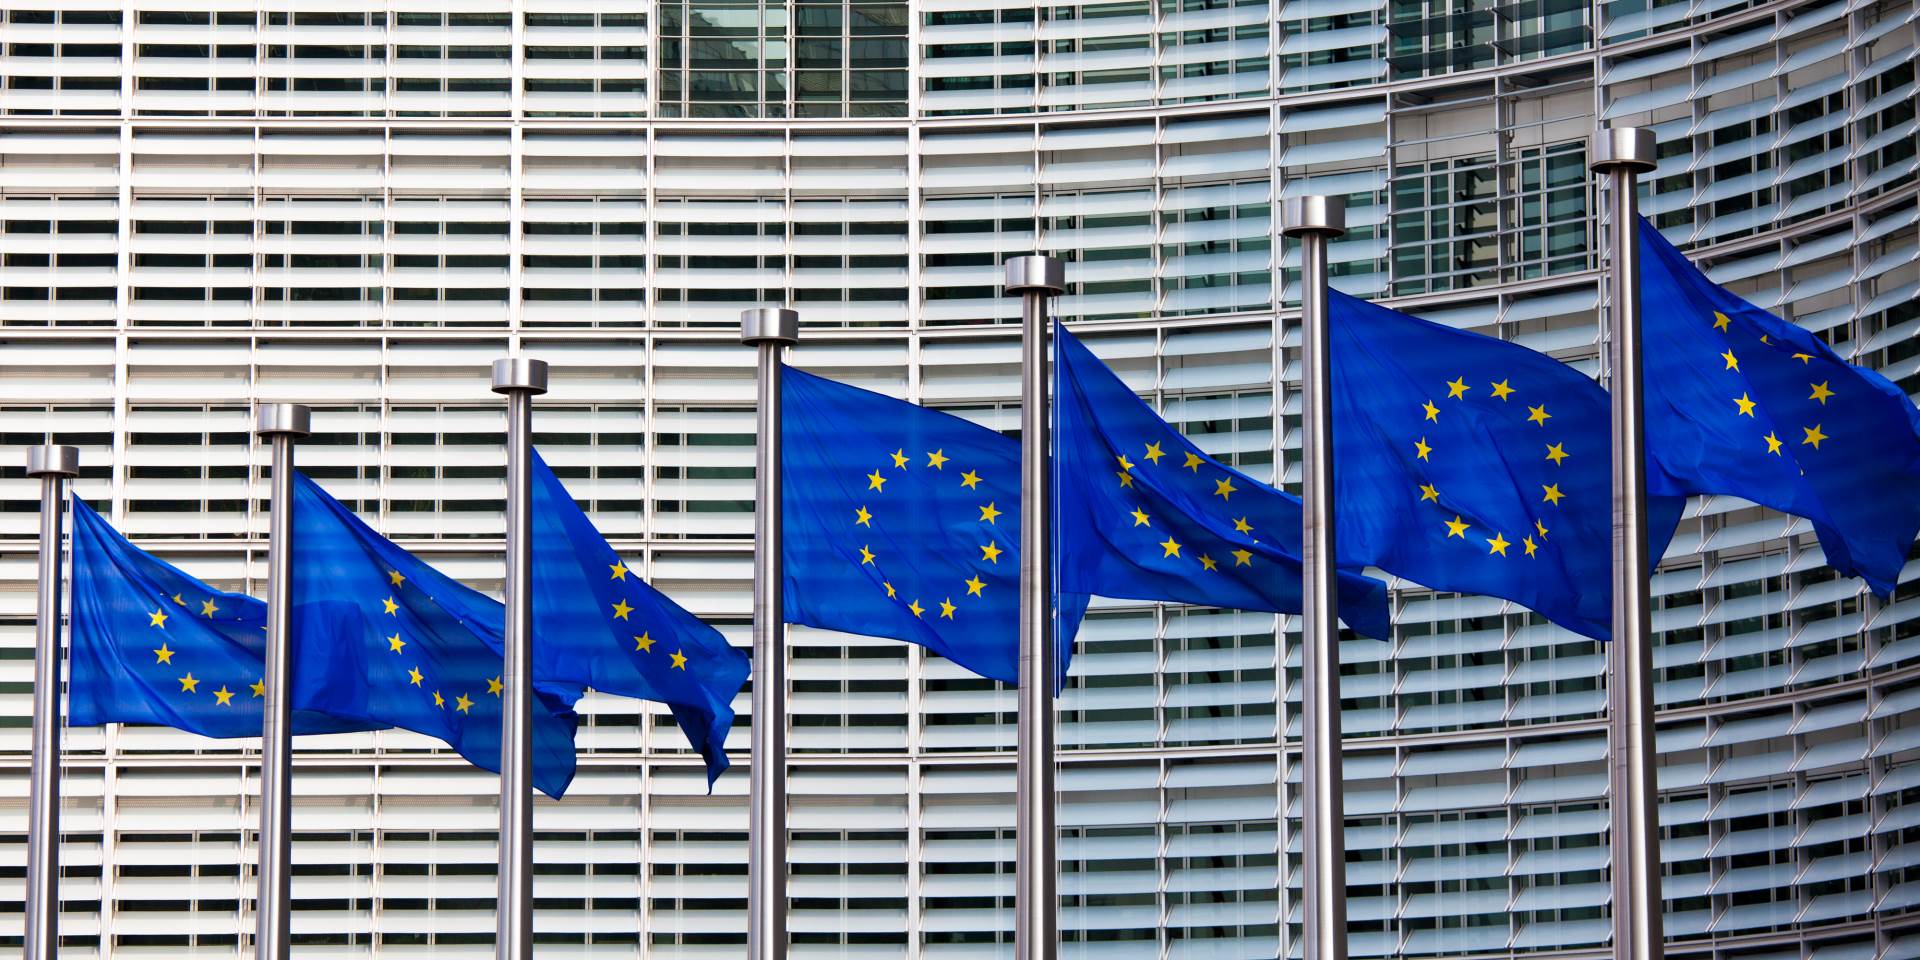  Evropska unija BiH ima priliku da sprovede reforme 